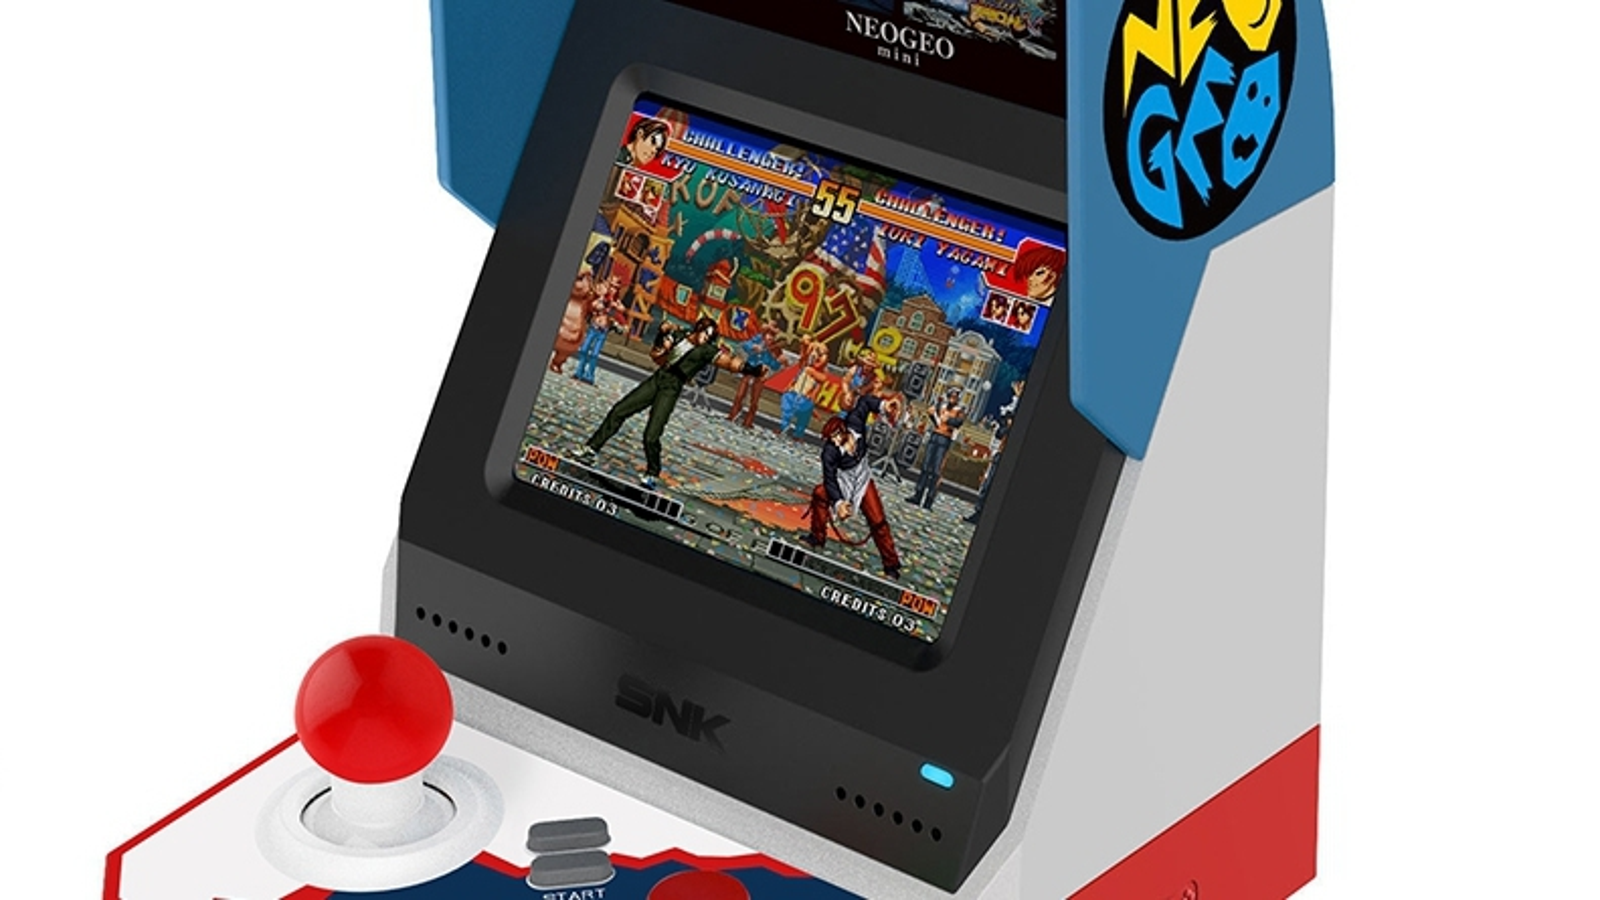 SNK is releasing a Neo Geo Mini